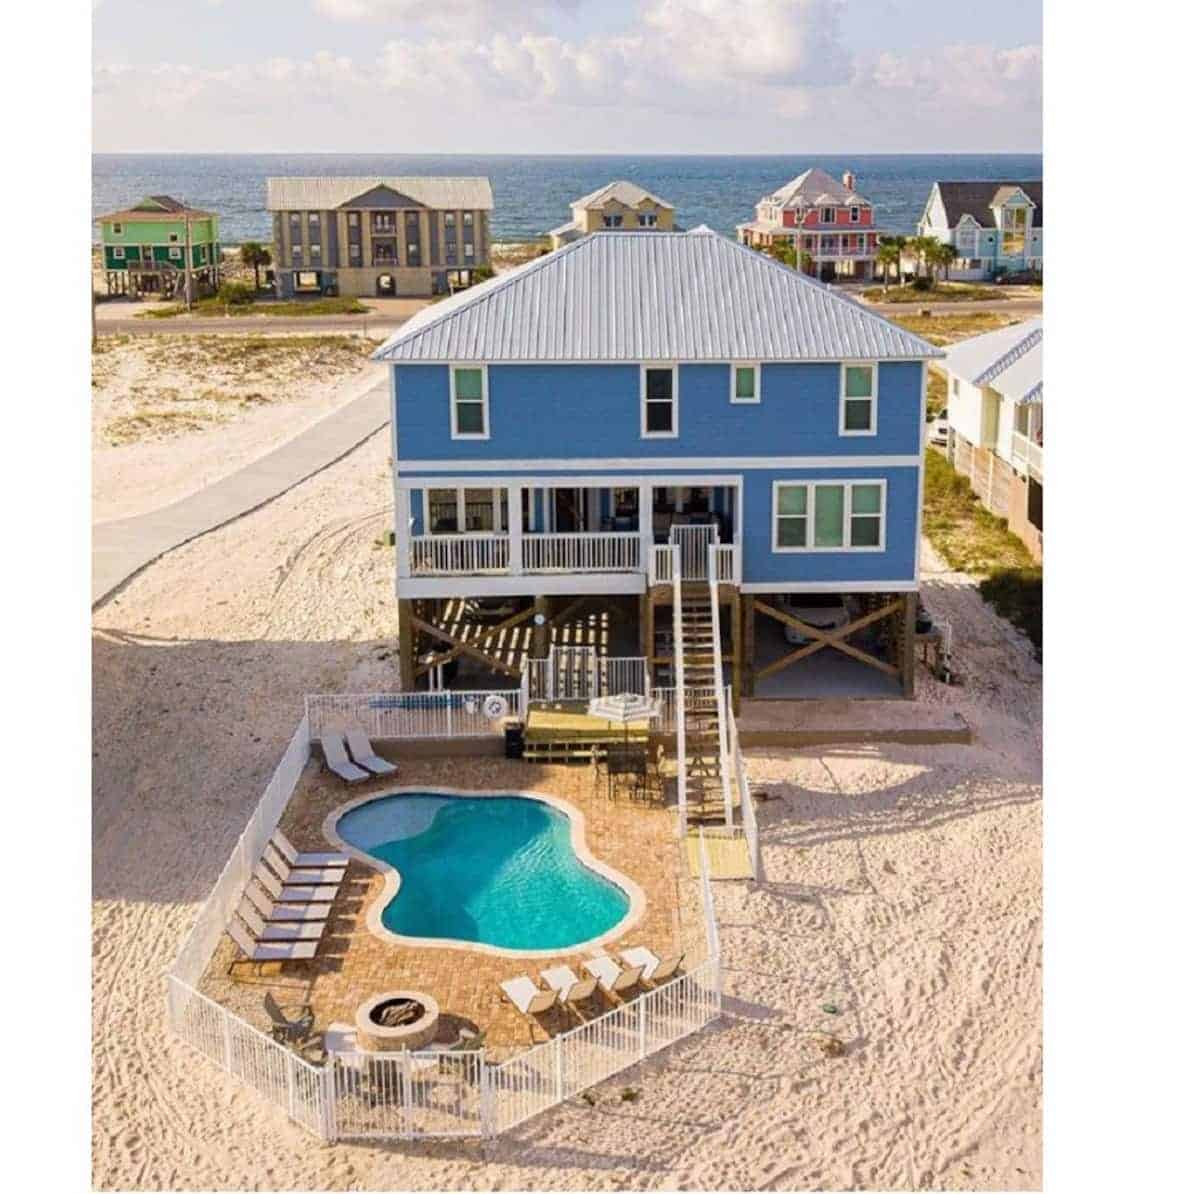 [UPDATED] 30 Dreamy Airbnb Orange Beach Vacation Rentals (Jan 2021)